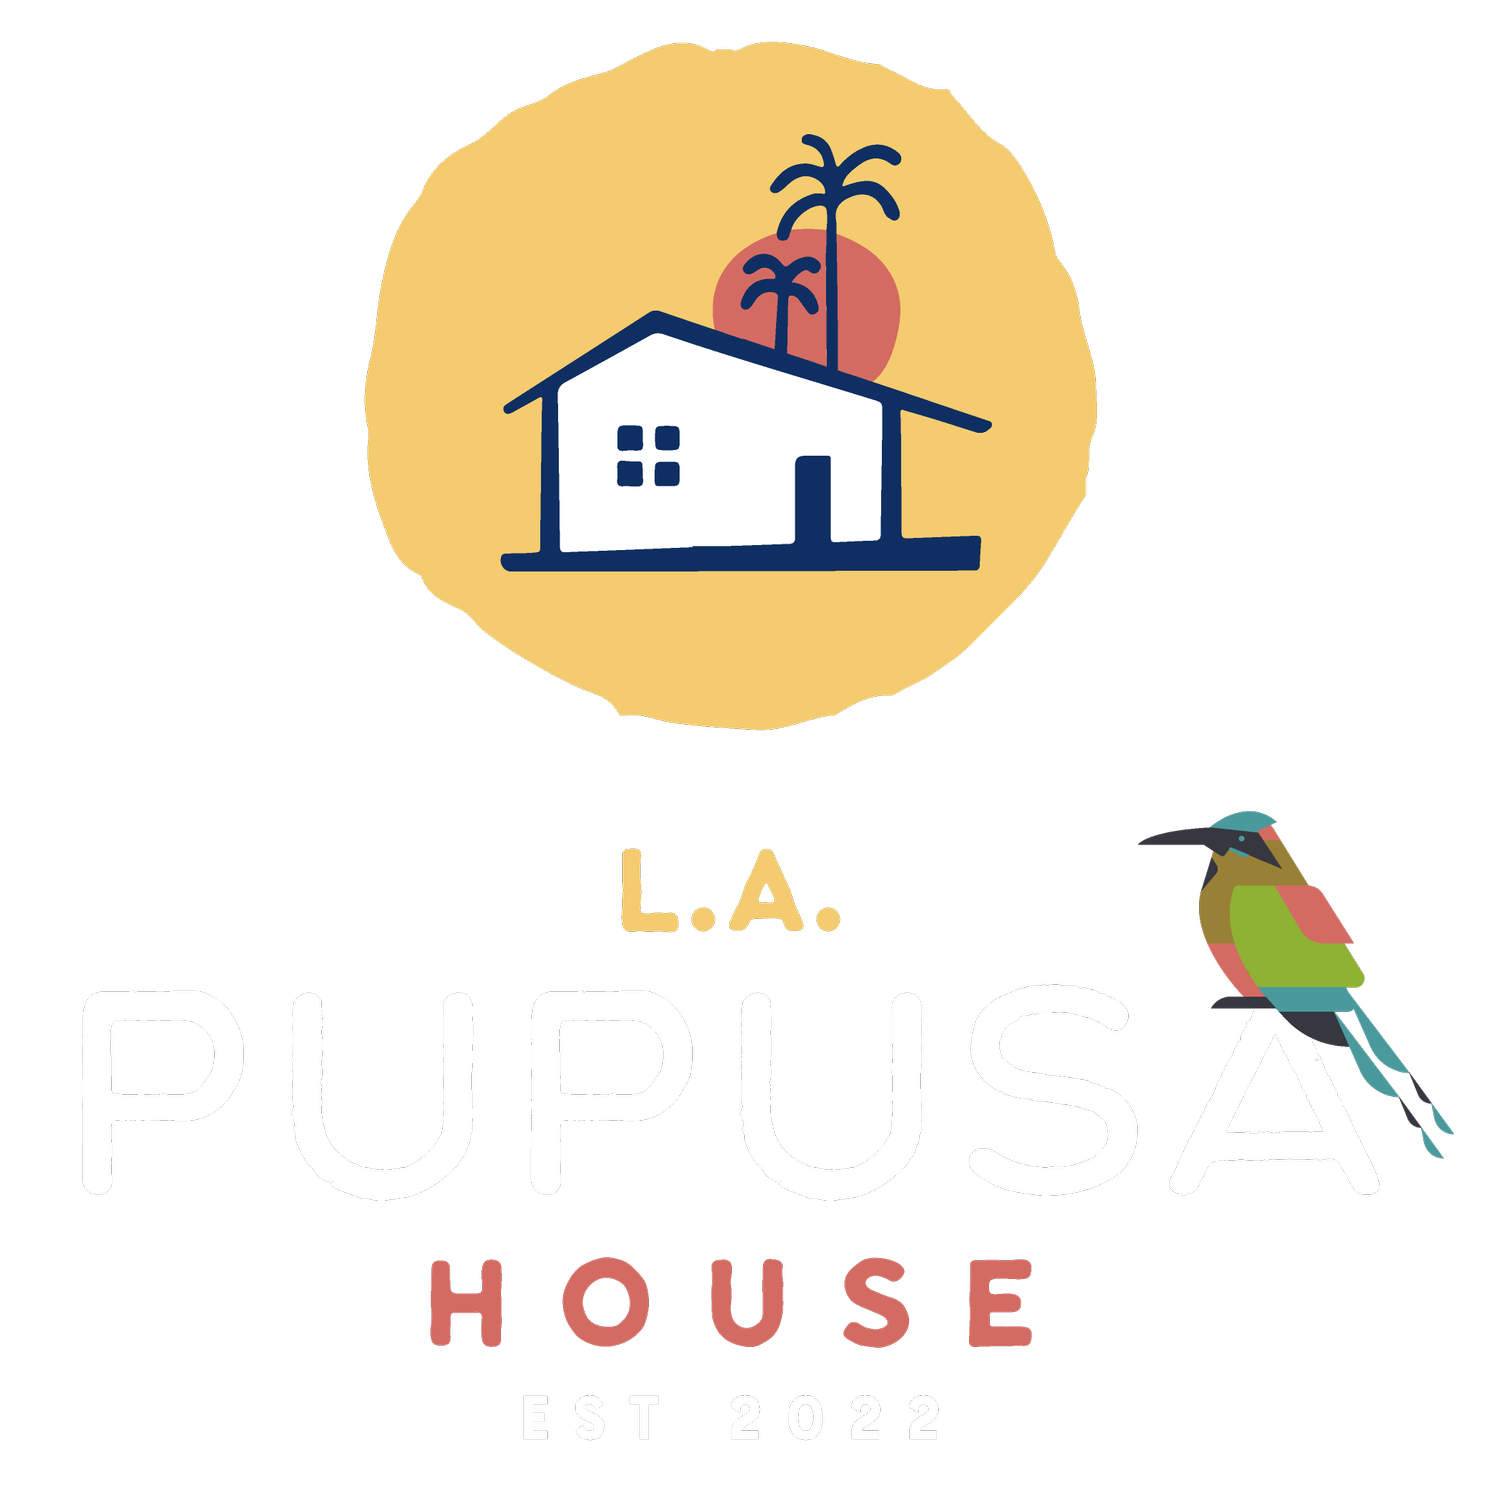 L.A. PUPUSA HOUSE